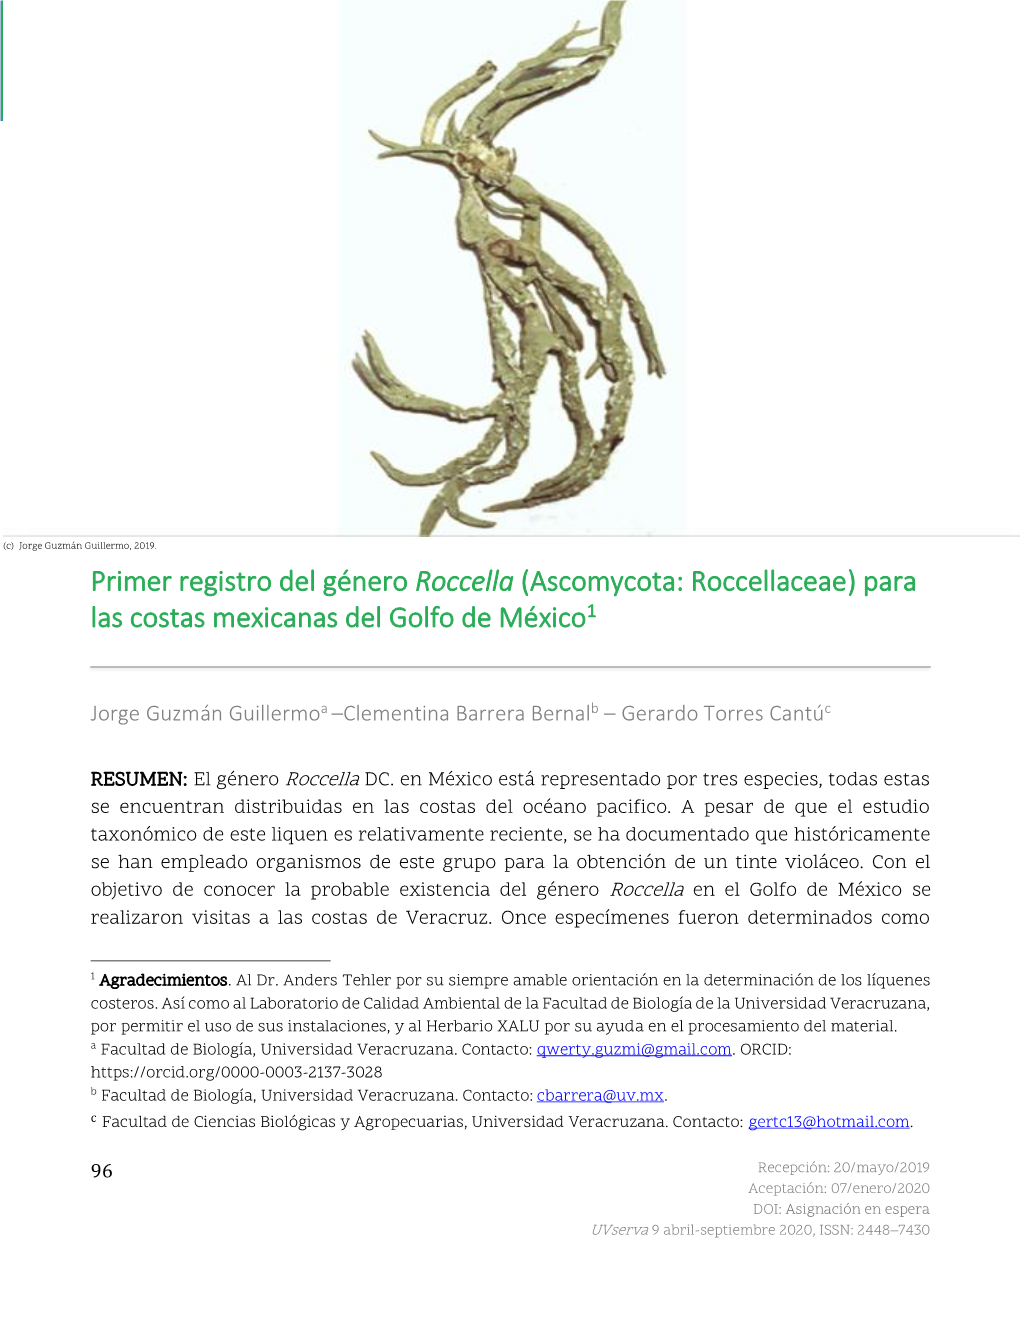 Primer Registro Del Género Roccella (Ascomycota: Roccellaceae) Para Las Costas Mexicanas Del Golfo De México1